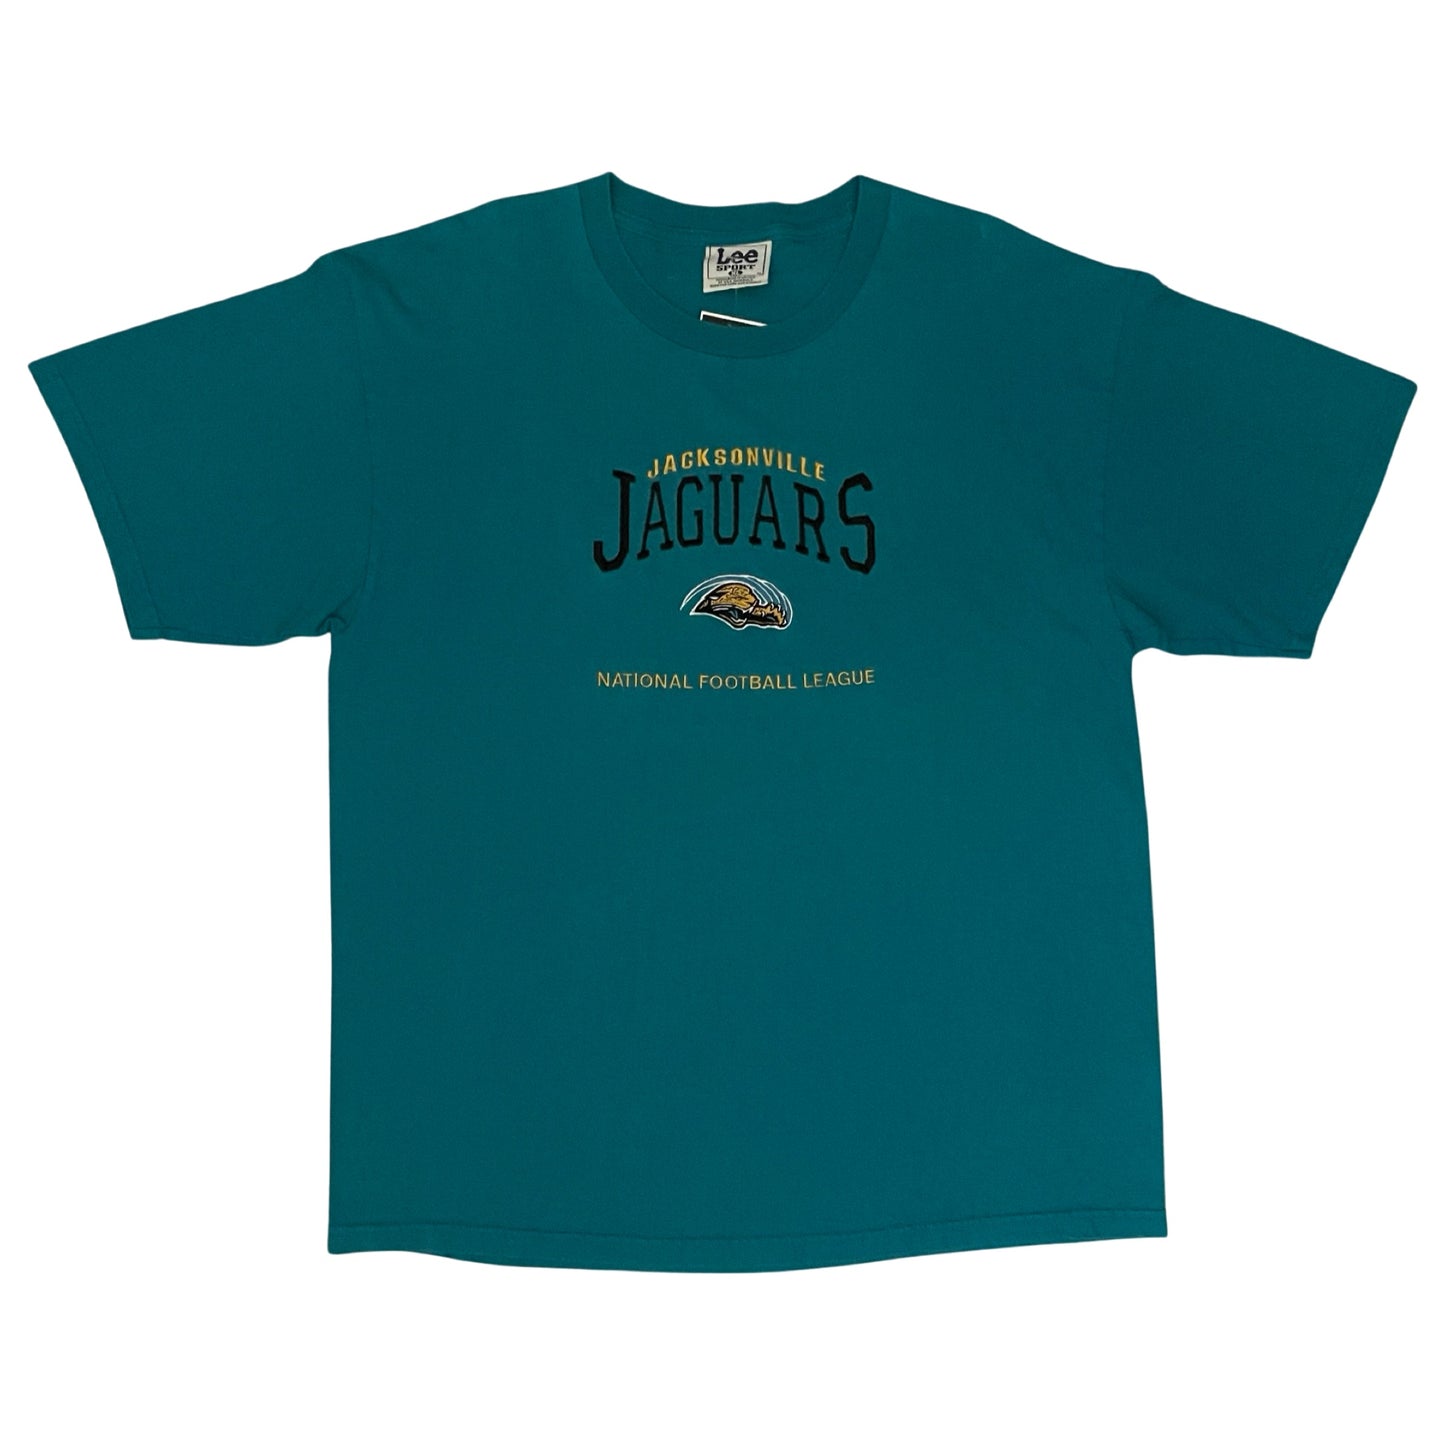 Vintage Jacksonville Jaguars embroidered shirt size XL